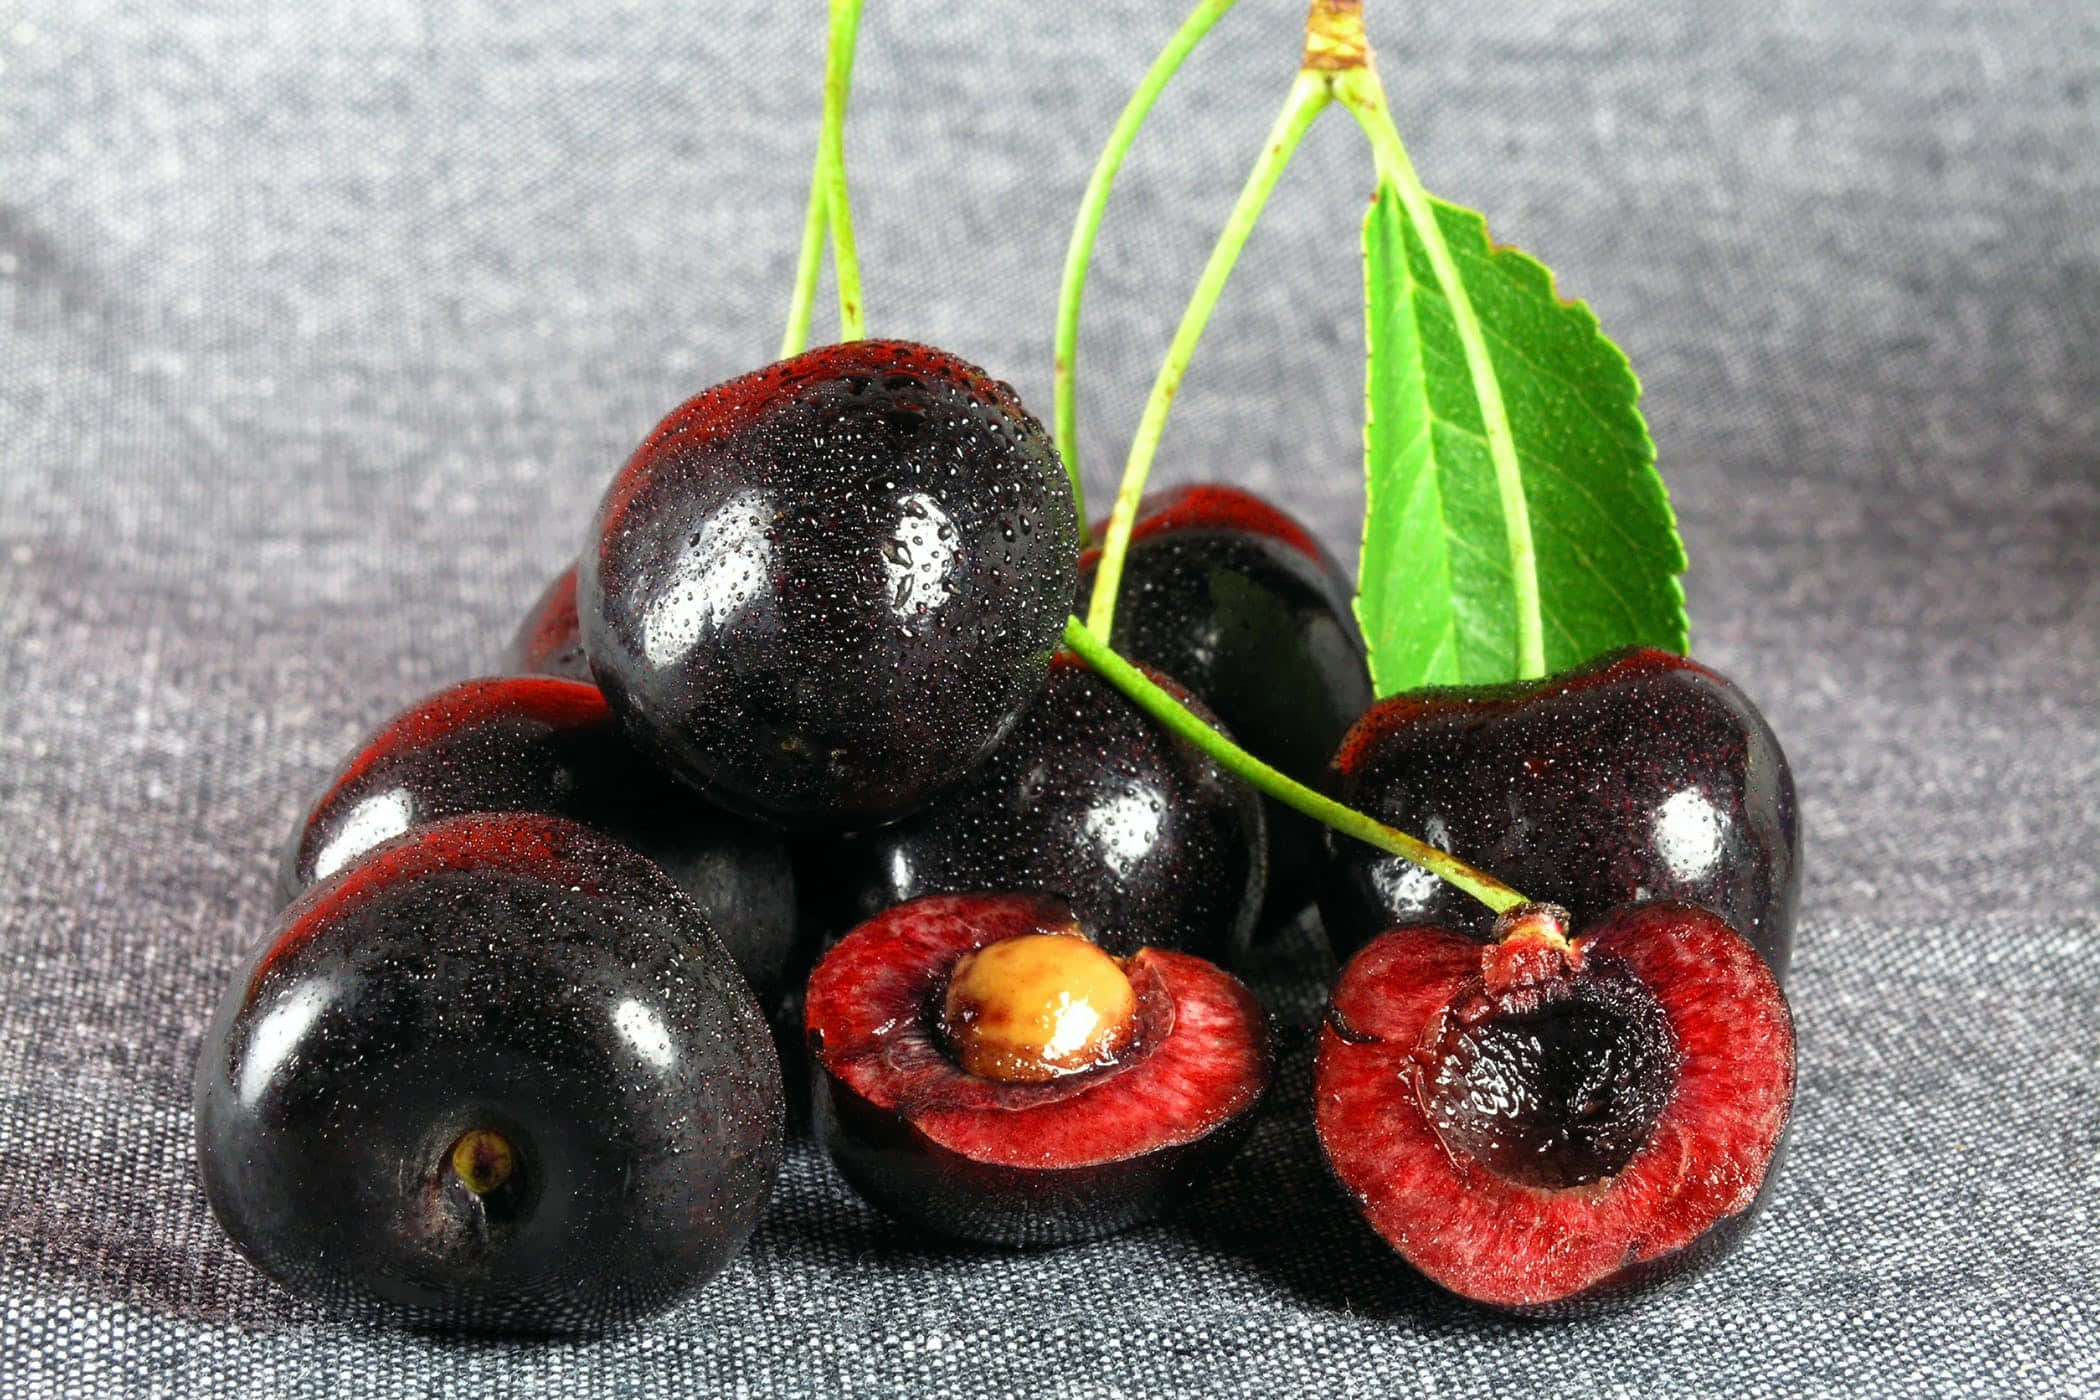 Taste the sweetness of dark red Black Cherry Wallpaper